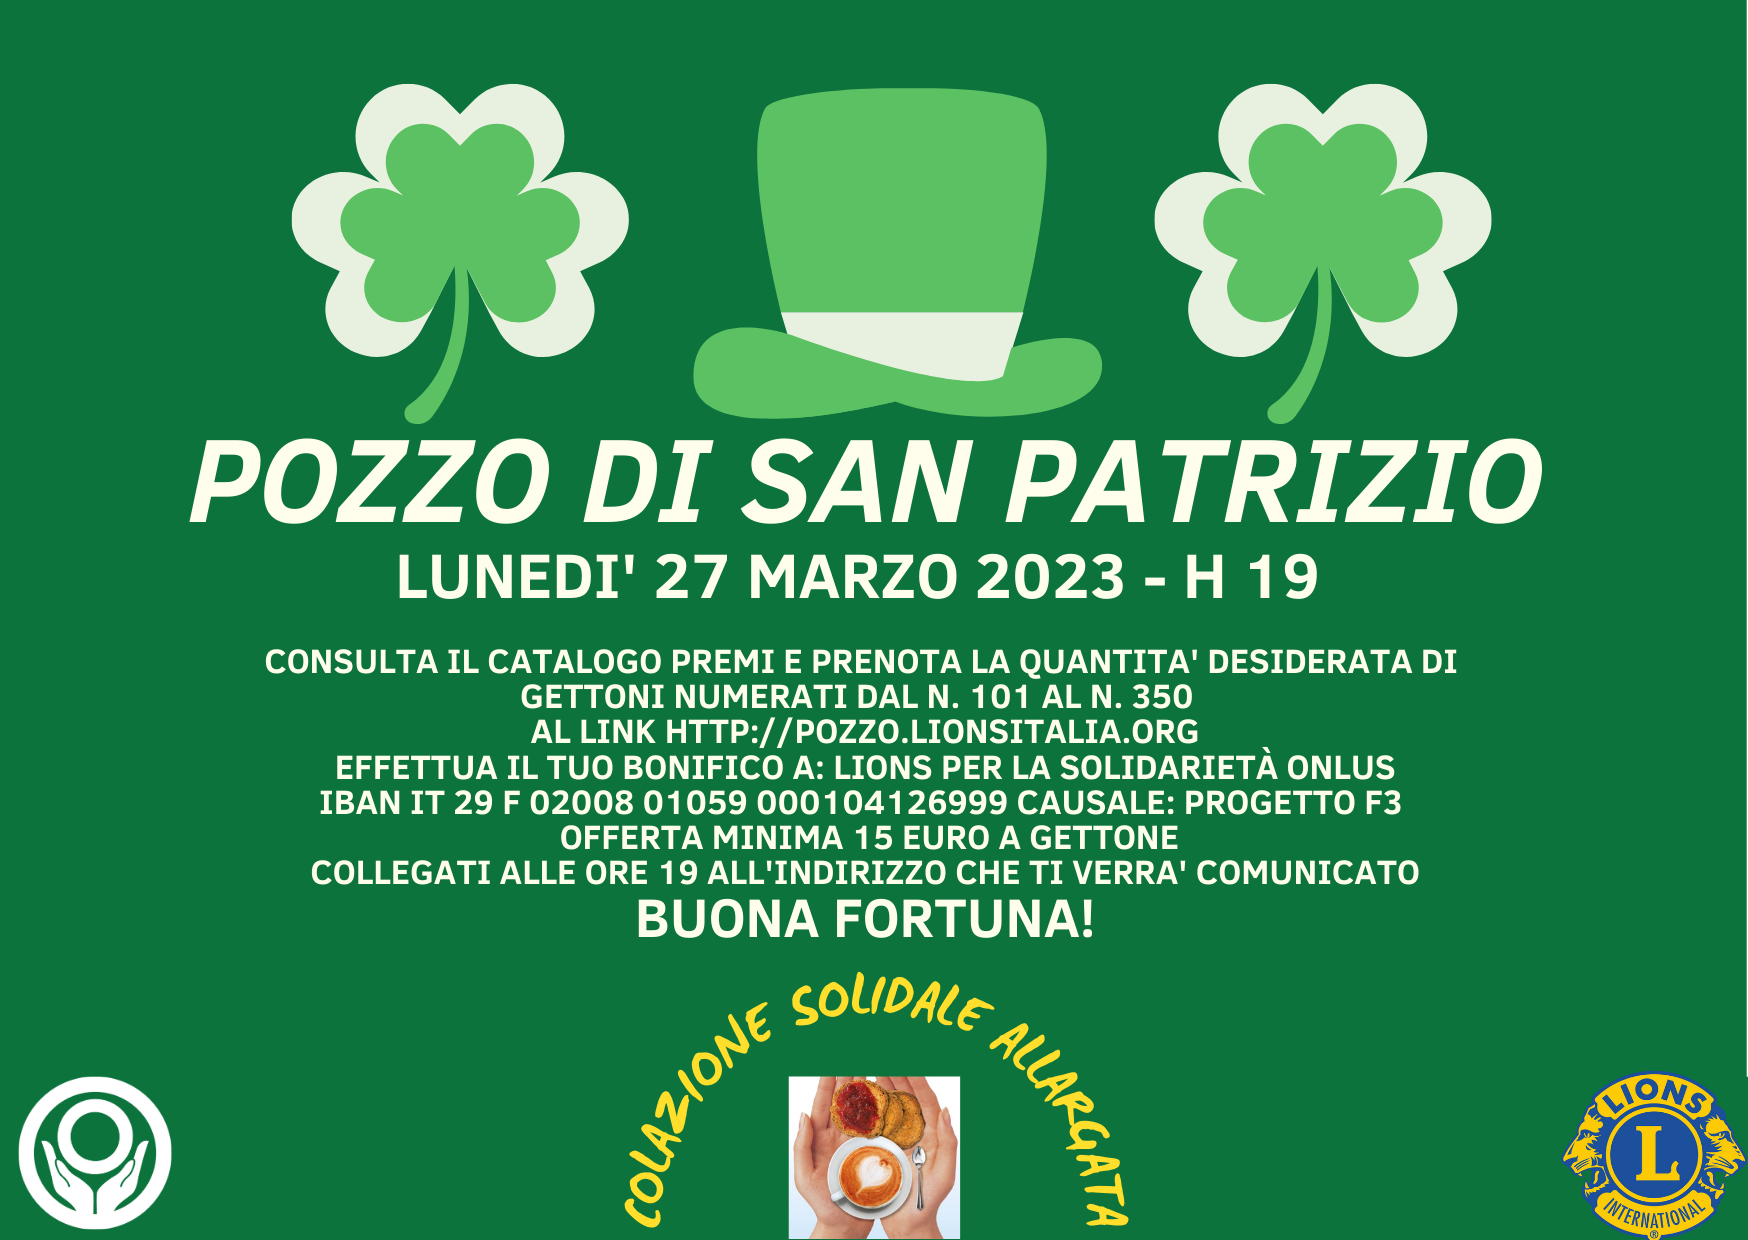 Lions Pozzo di San Patrizio, 27/03/2023